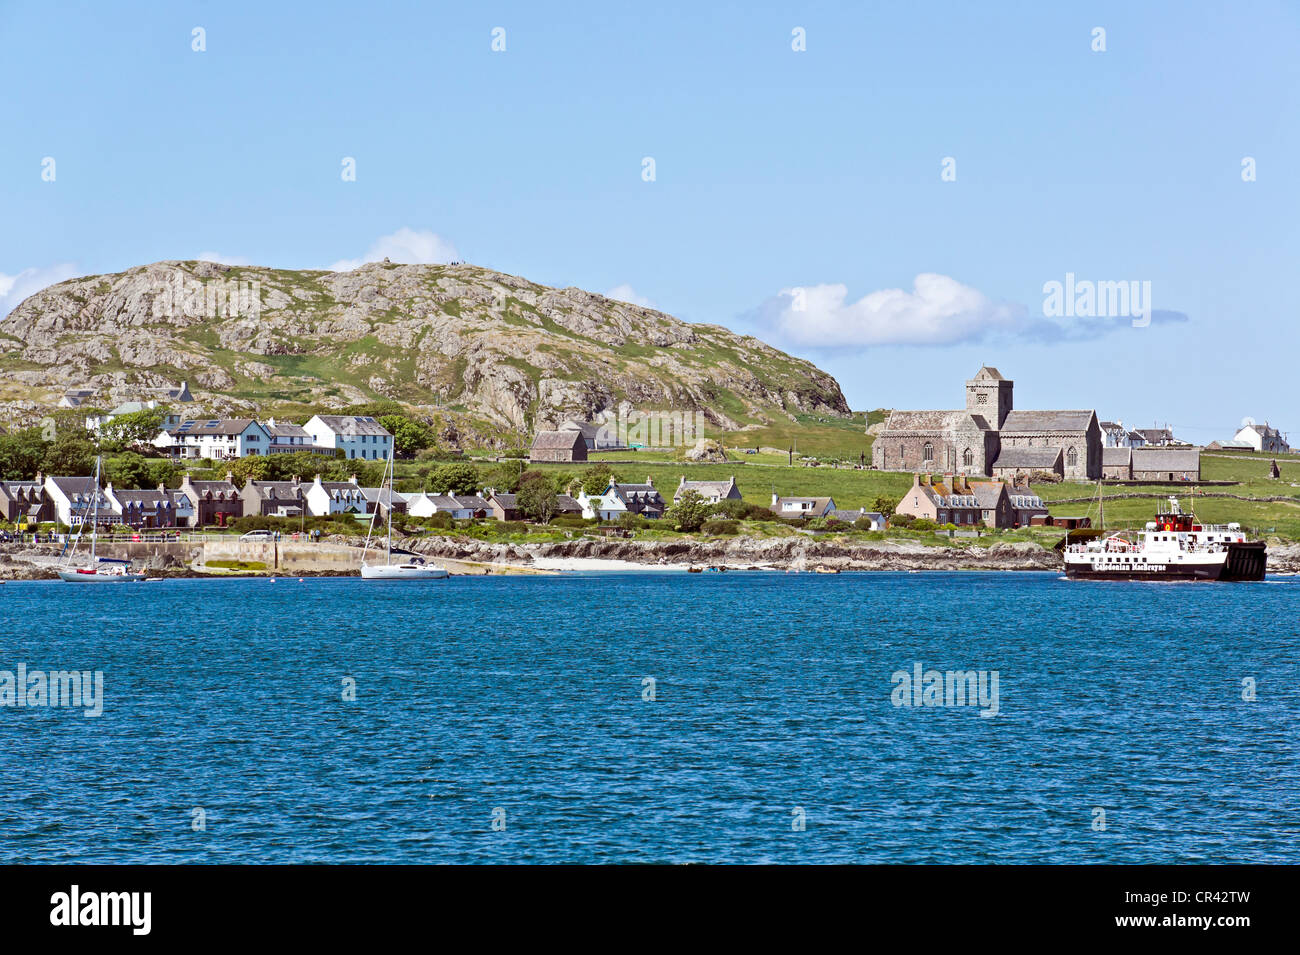 Historic Scotland propiedad y mantenido la Abadía de Iona en la isla de Iona off Mull en el oeste de Escocia con ferry Loch Buie llegar Foto de stock